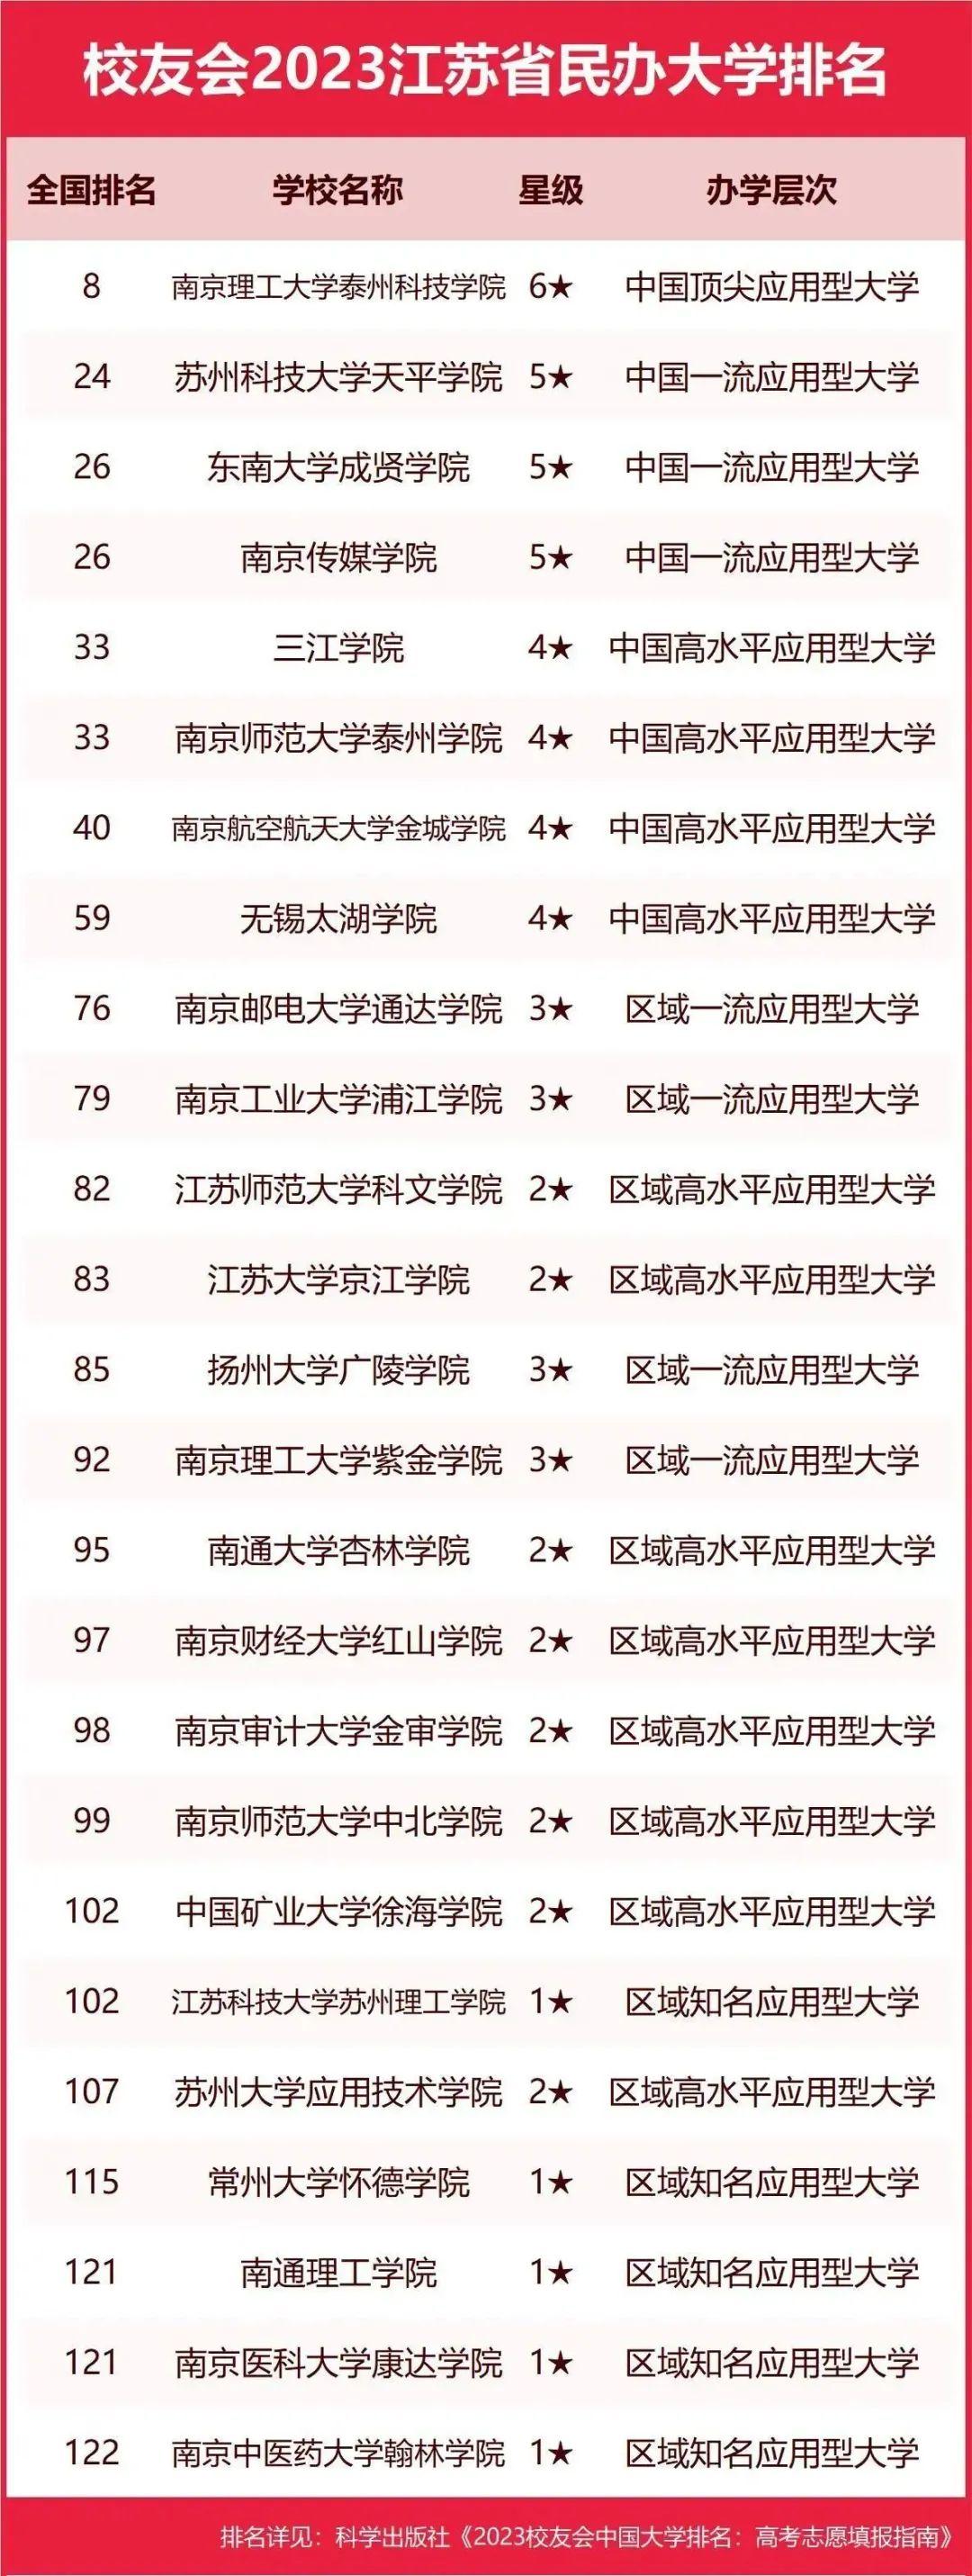 2023江苏省大学排名,南京大学,南京理工大学泰州科技学院等第一